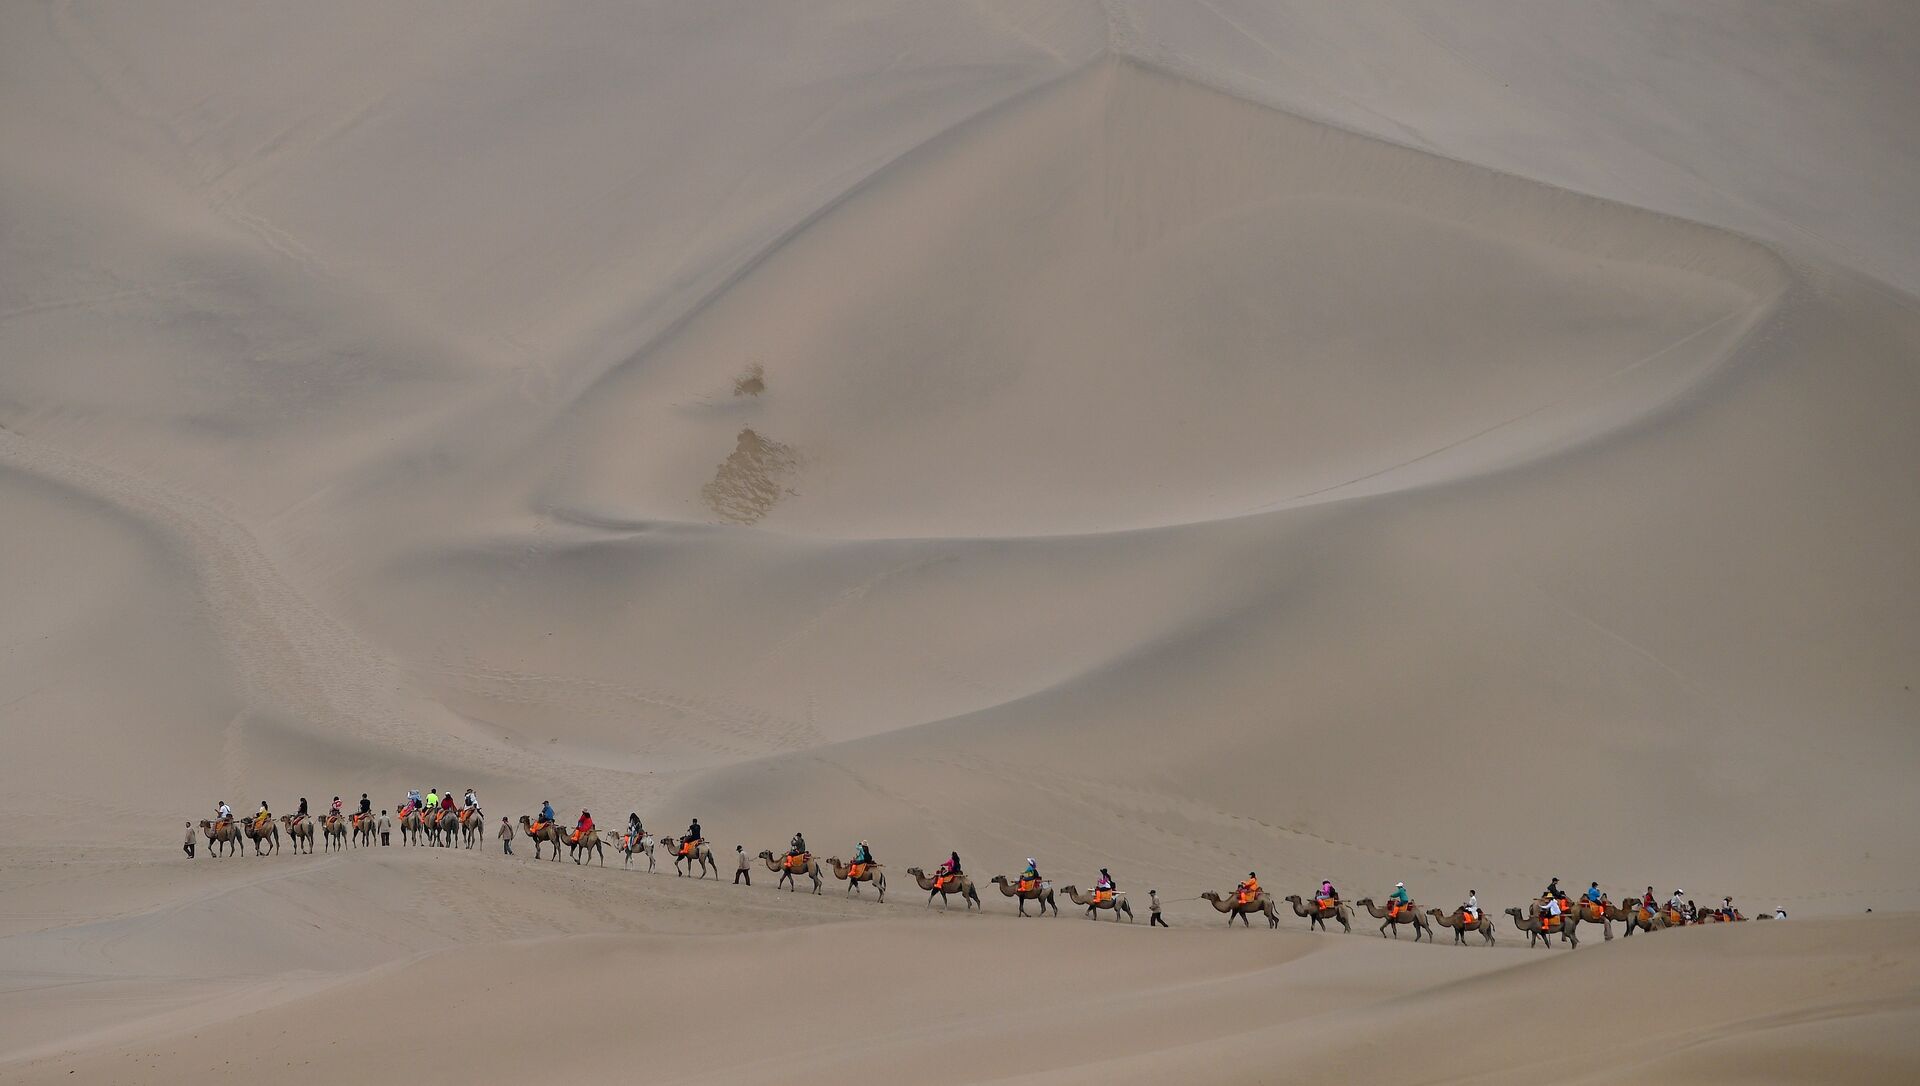 Люди ходят с верблюдами по пустыне в Дуньхуане, Китай, фото из архива - Sputnik Азербайджан, 1920, 23.06.2021